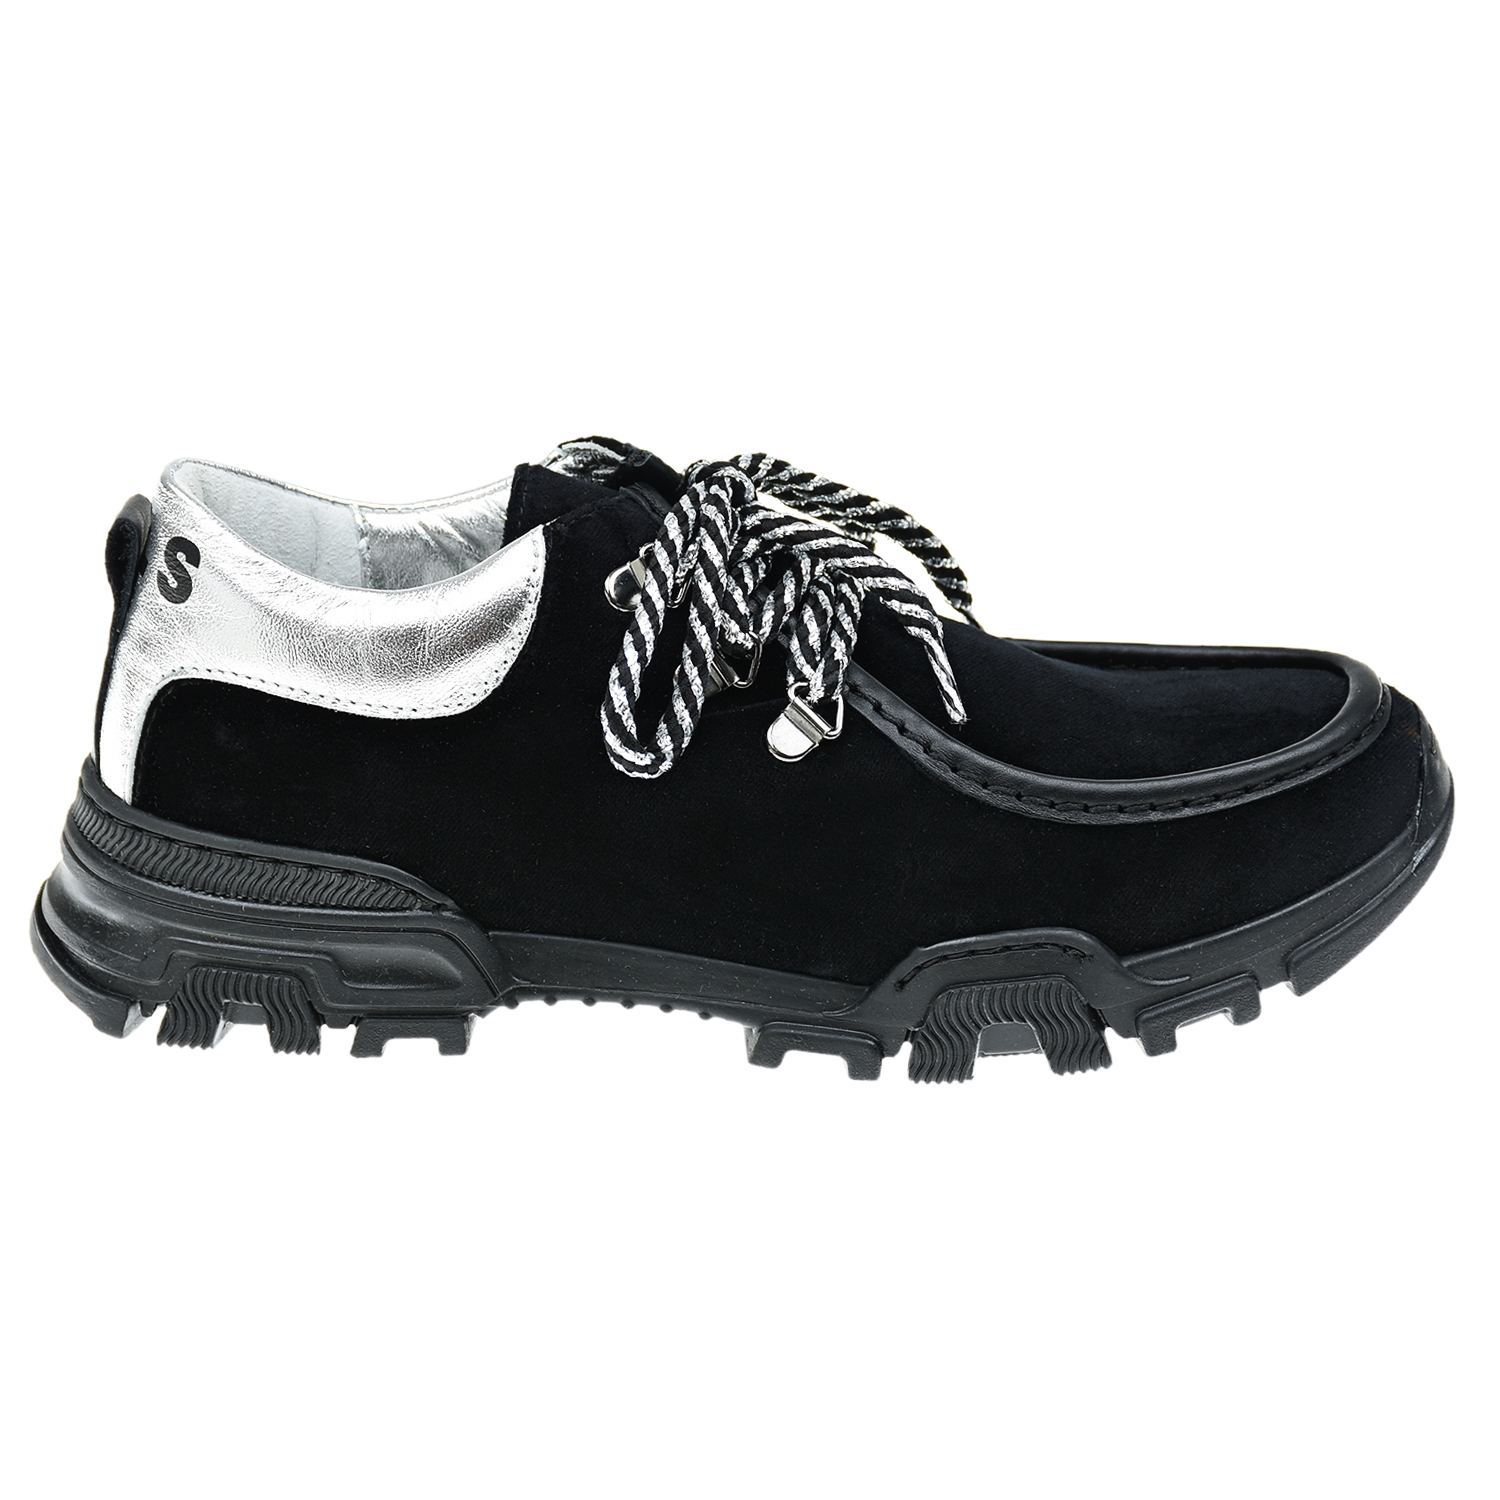 Низкие ботинки для девочек Monnalisa детские, размер 37, цвет черный - фото 2